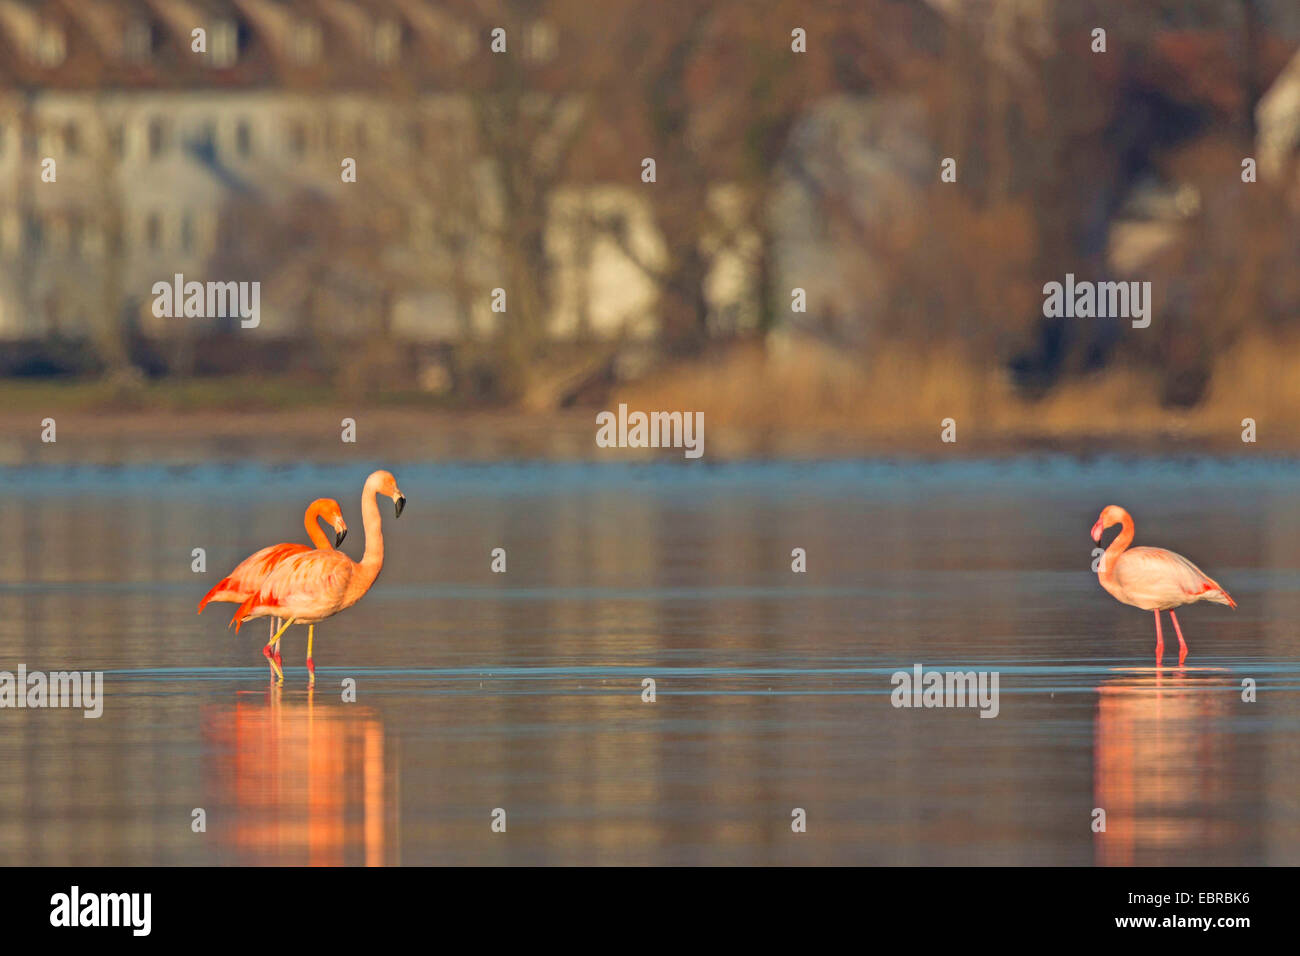 Flamant rose, American flamingo, Caraïbes Flamingo (Phoenicopterus ruber ruber), flamant rose flamant du Chili et debout dans un lac peu profond, l''hiver, l'Allemagne, la Bavière, le lac de Chiemsee Banque D'Images